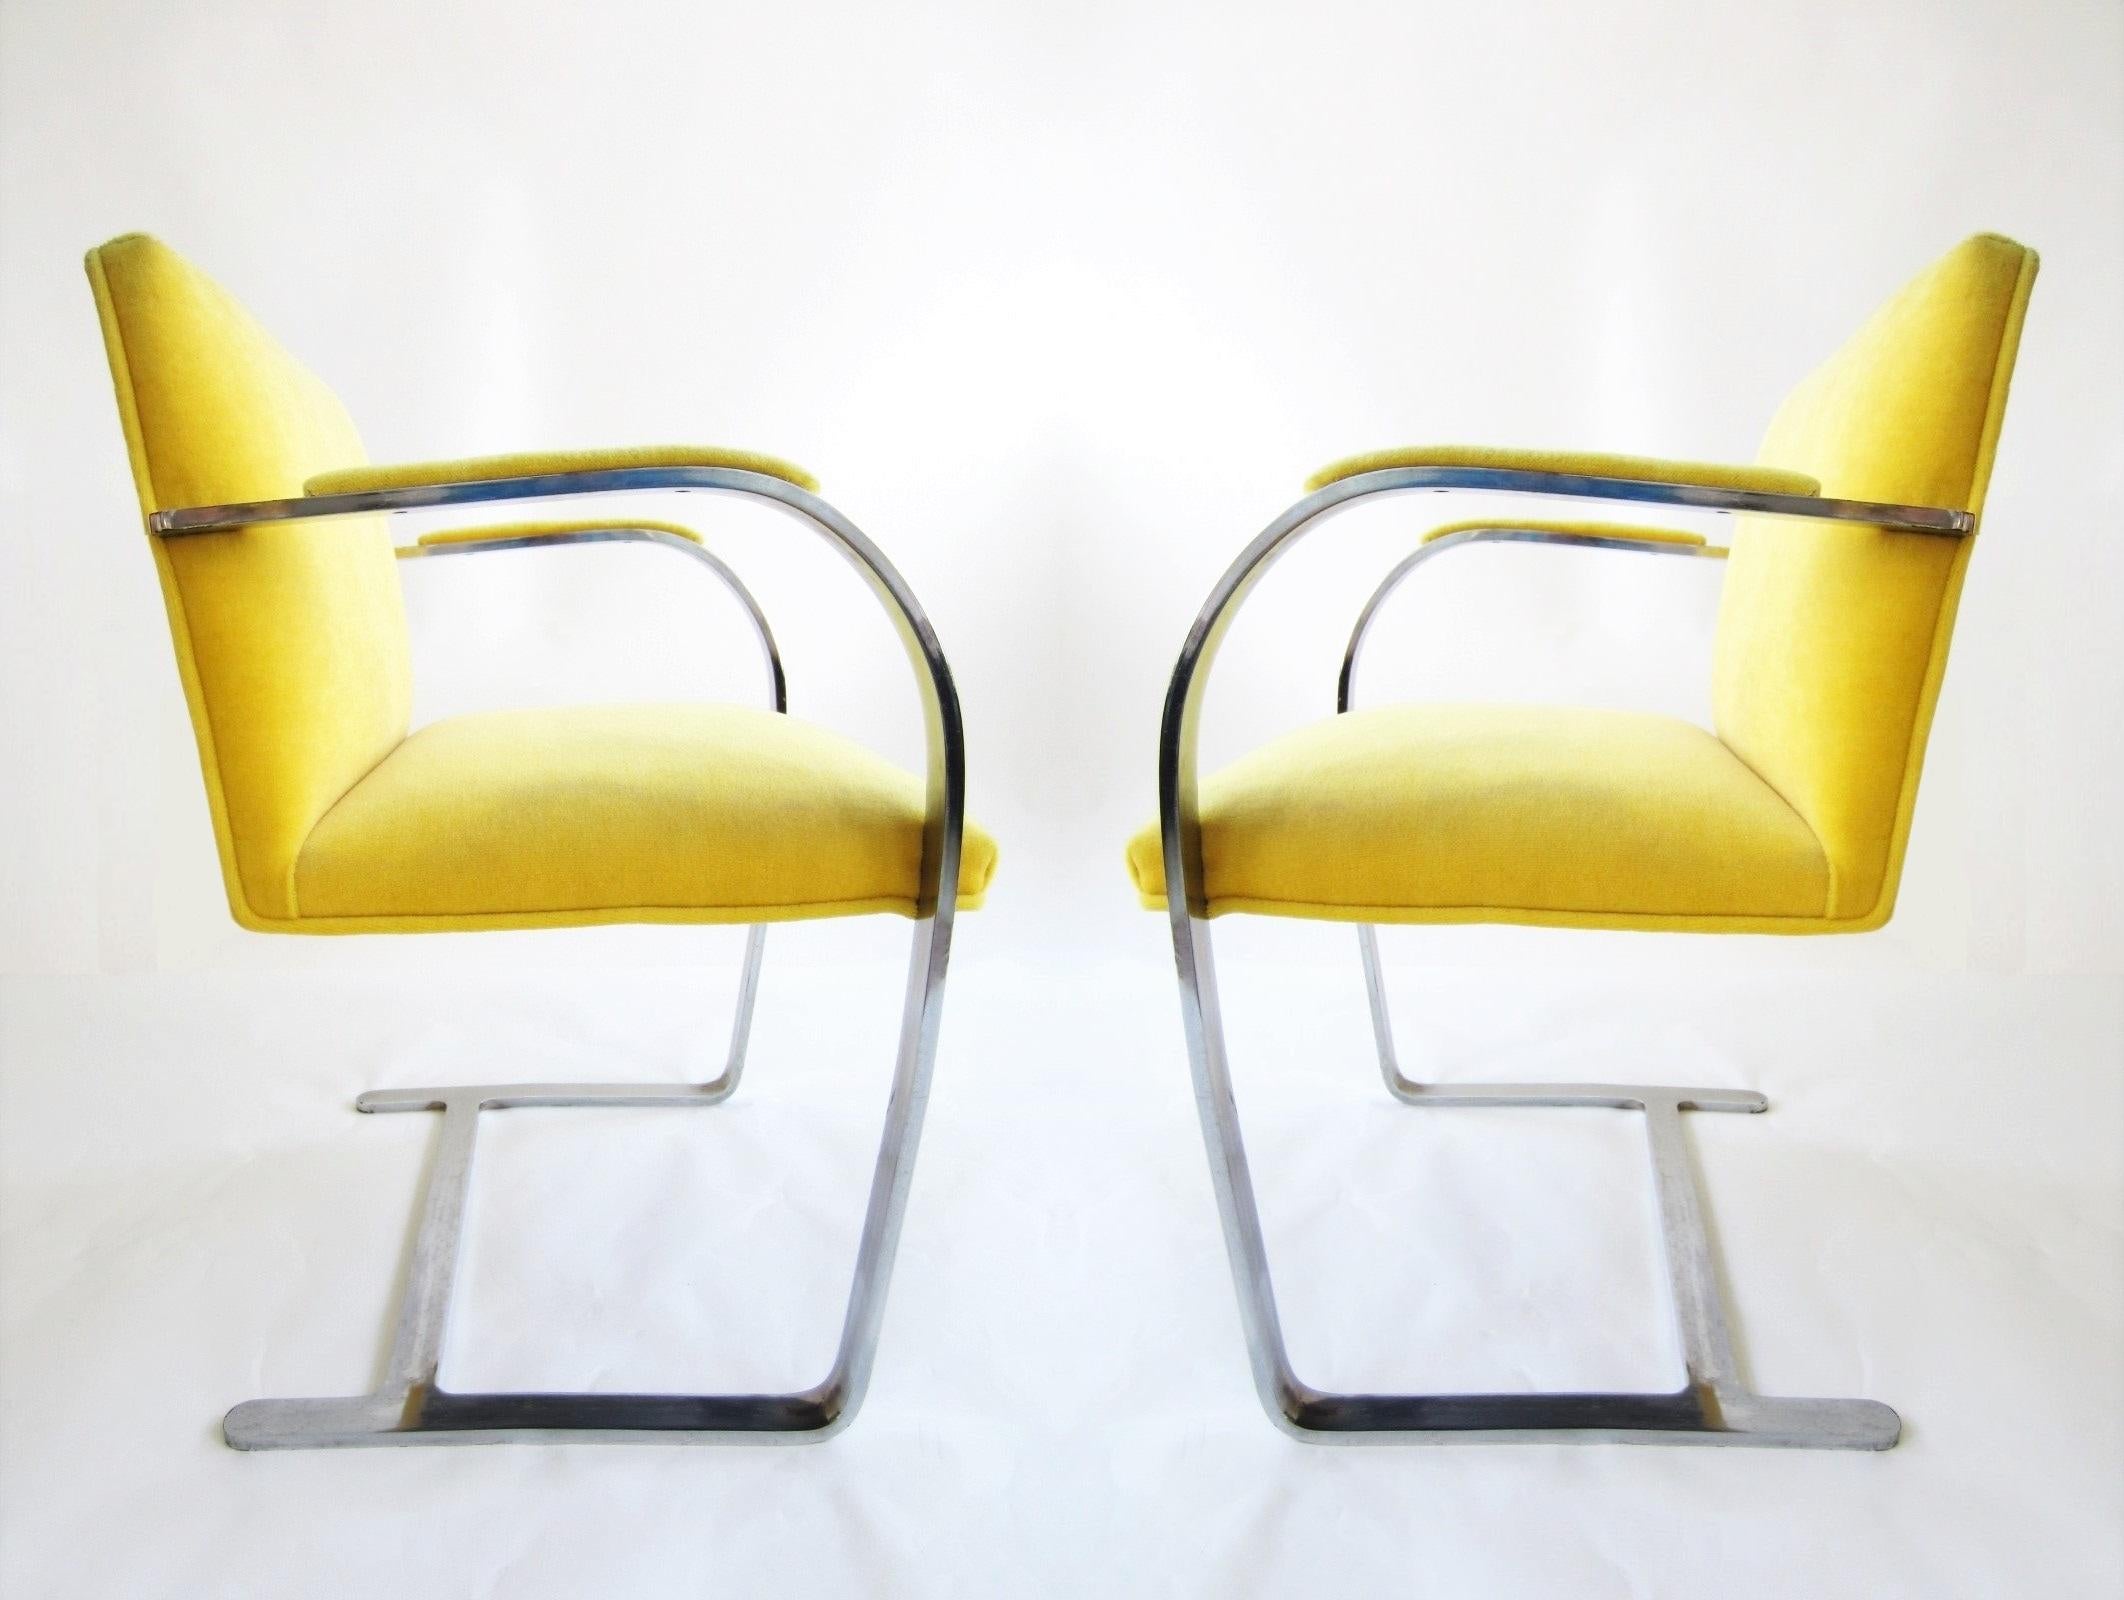 Diese flachen Barstühle im modernen Vintage-Stil von Brno sind elegant und zeitlos. Die Stühle haben freitragende, schwere Flacheisenrahmen aus Edelstahl. Der Sitz, die Rückenlehne und die gewölbten Armlehnen wurden neu mit gelbem Samt bezogen.